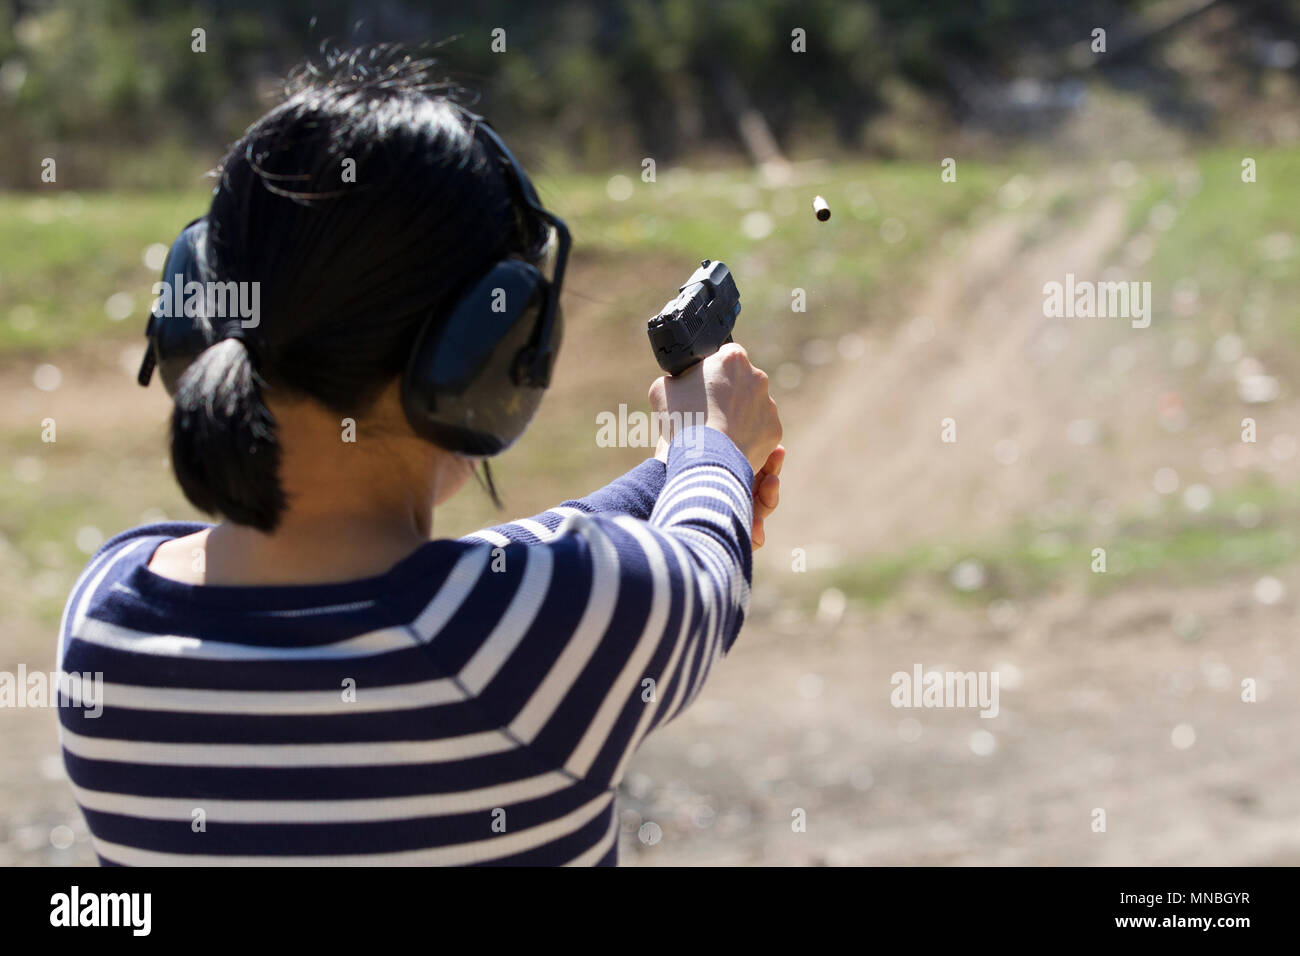 Une femme praqctices en toute sécurité un pistolet de tir à une distance de l'Idaho. Banque D'Images